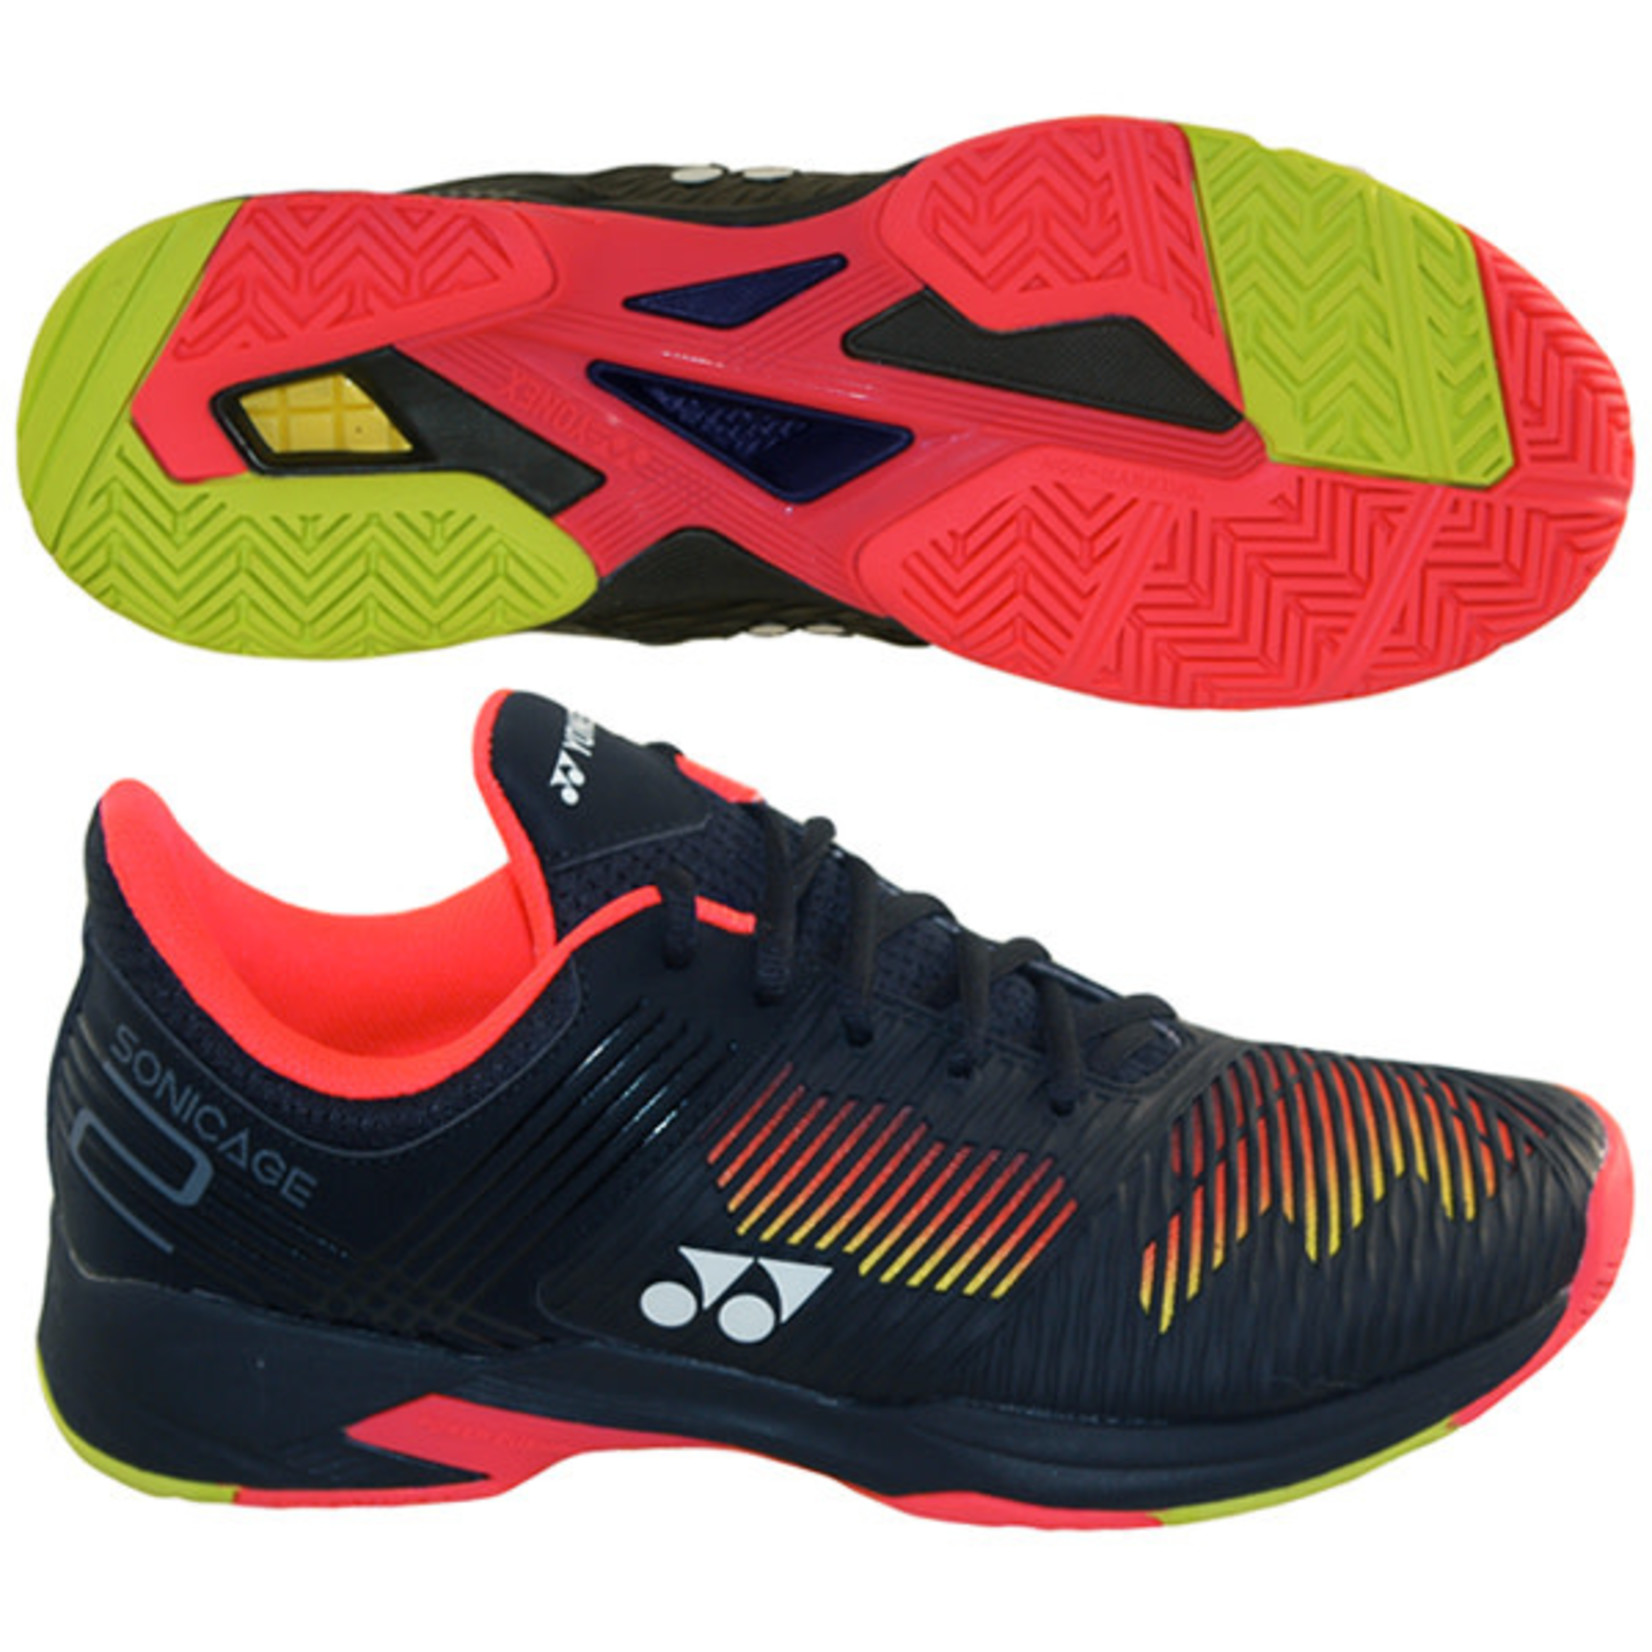 Yonex Yonex Sonicage 2 Men's Tennis Shoes